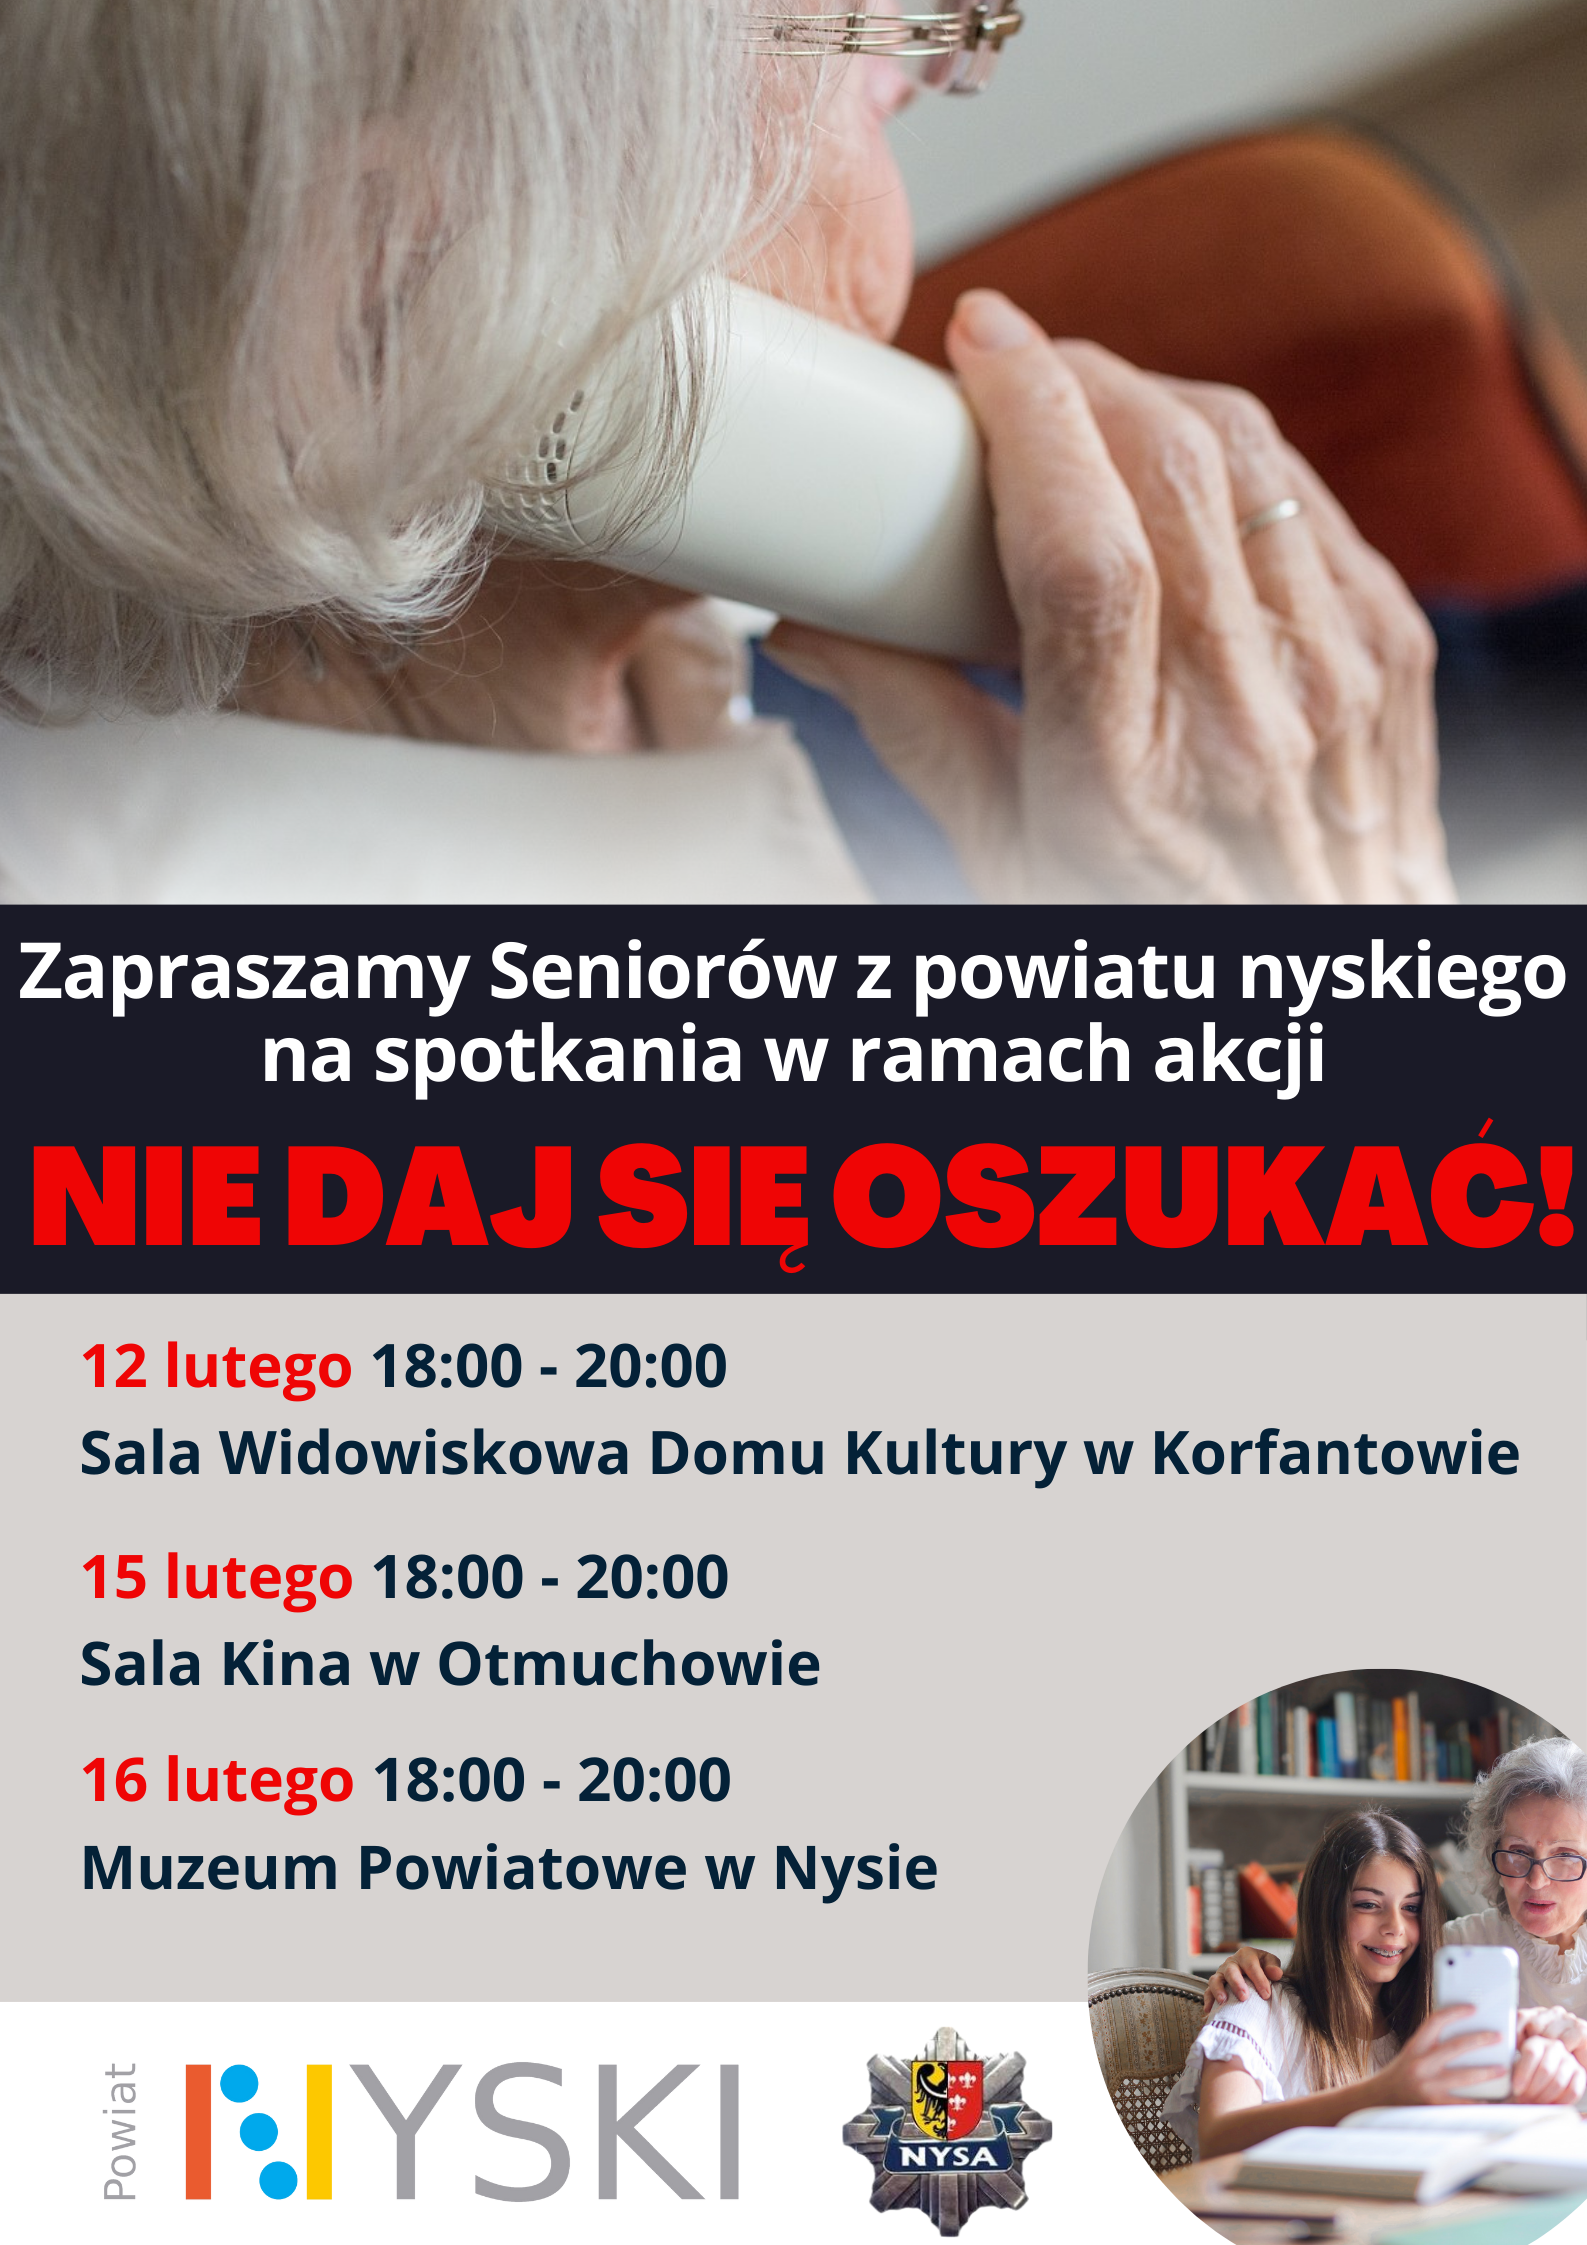 Plakat informujący Seniorów o spotkaniach w ramach akcji NIE DAJ SIĘ OSZUKAĆ